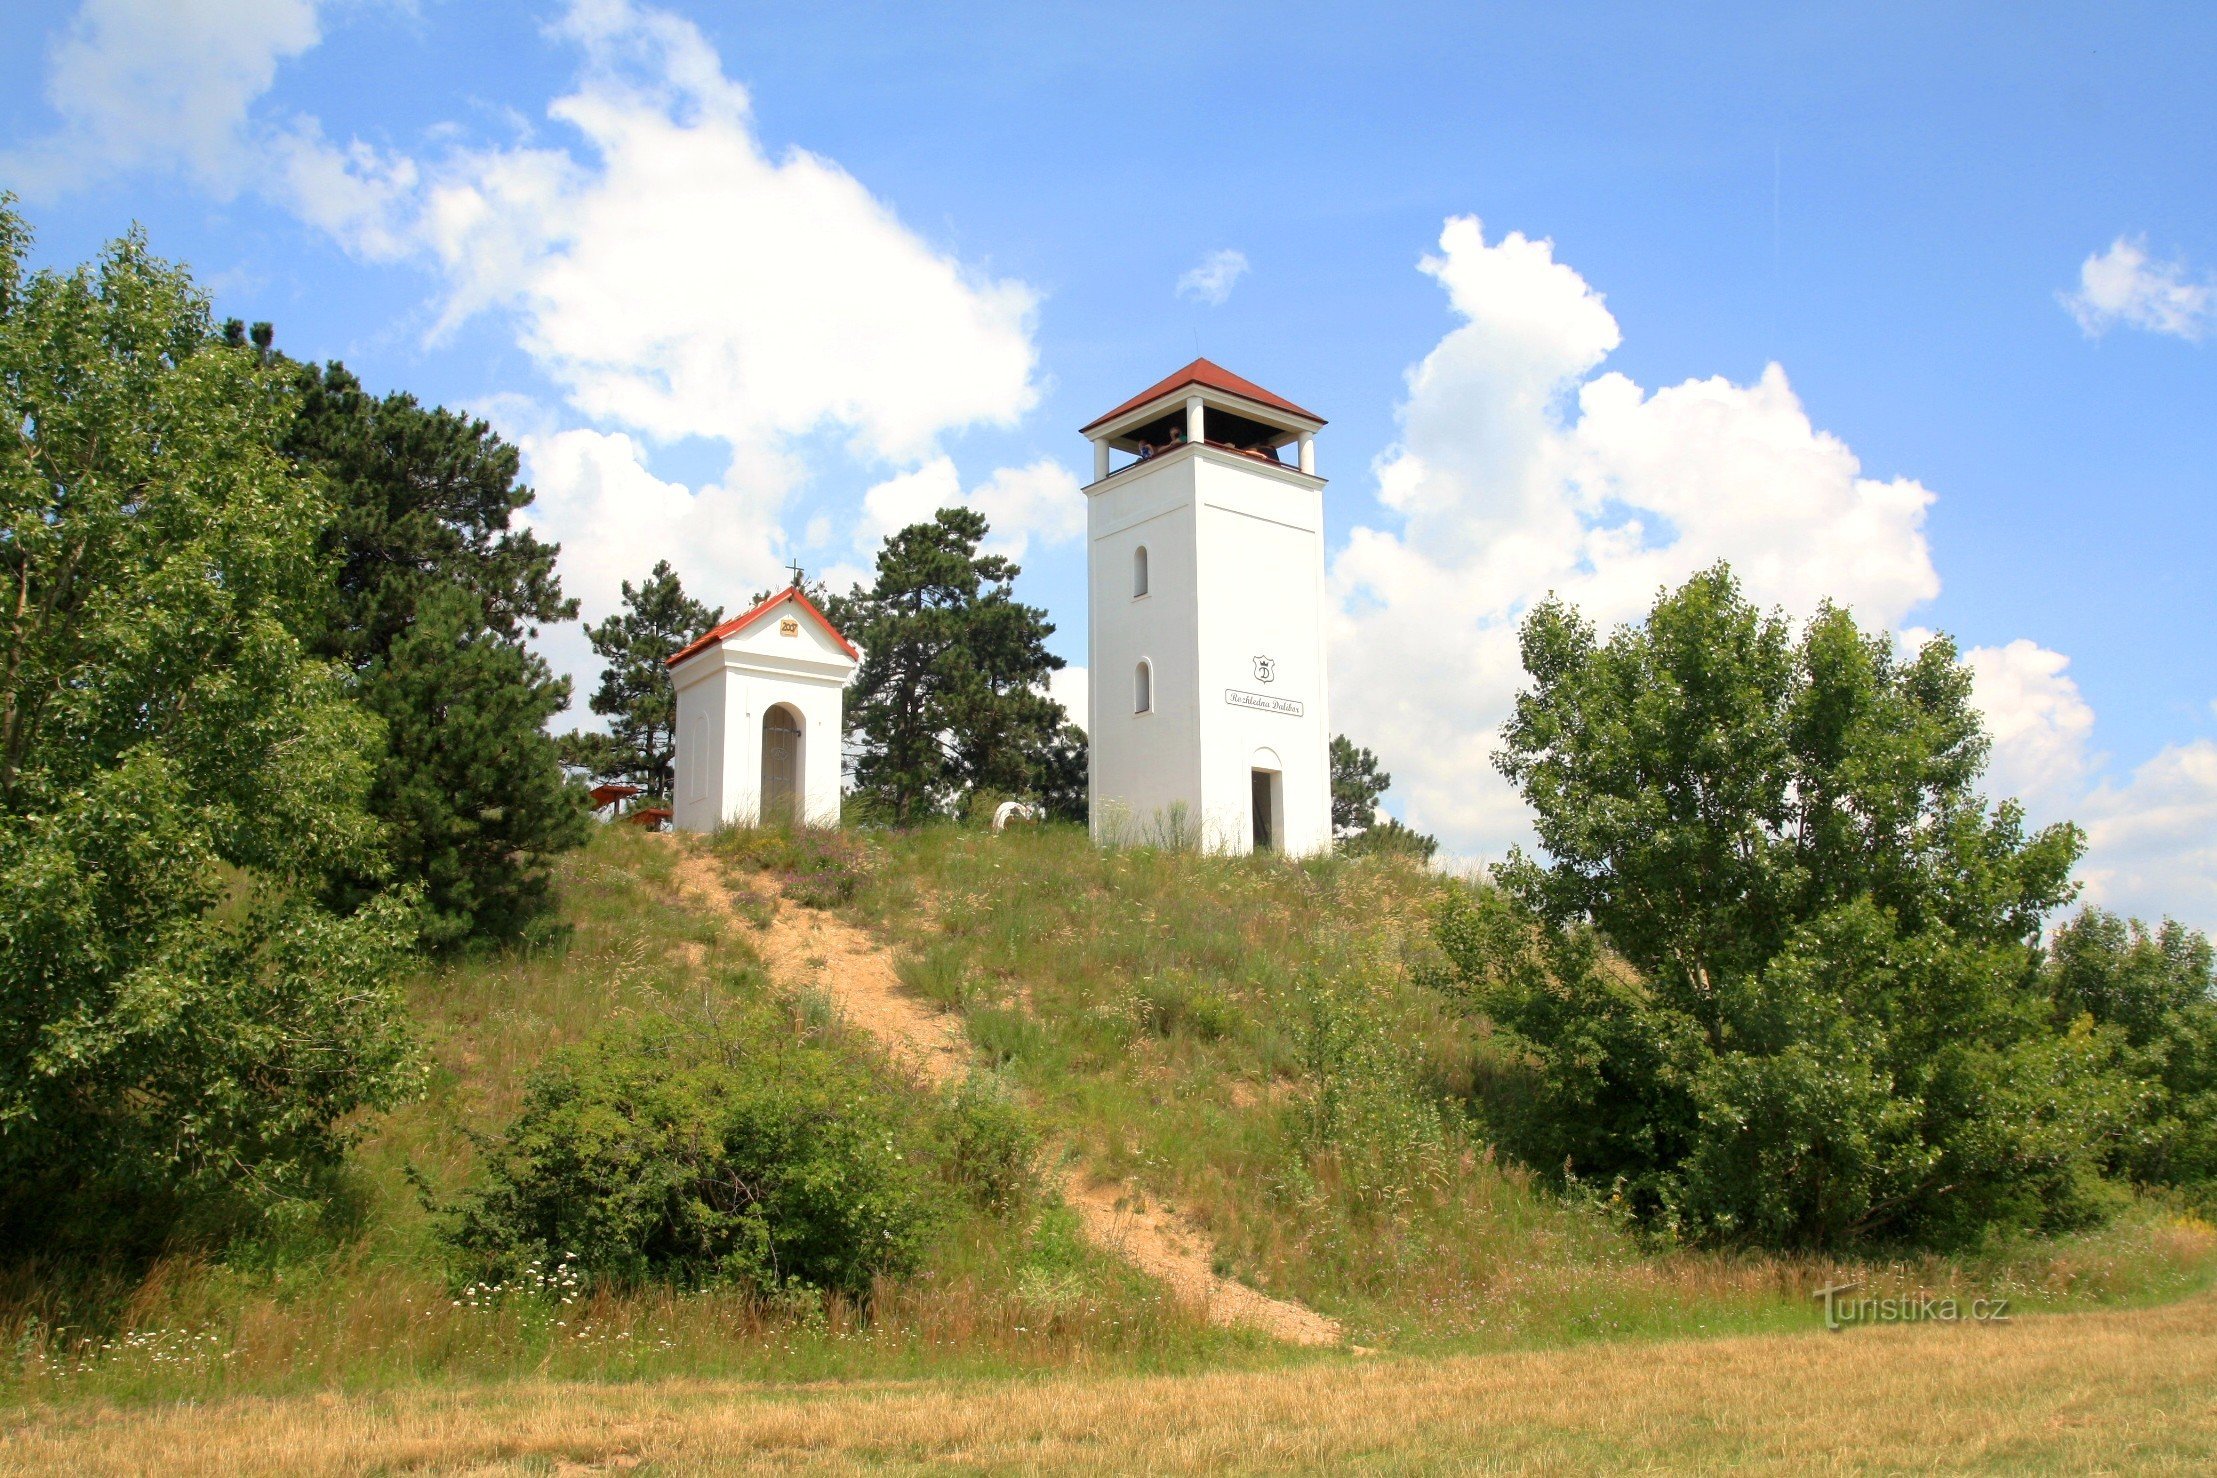 De top van Golgotha ​​met de kapel van St. Urbana en de uitkijktoren van Dalibor